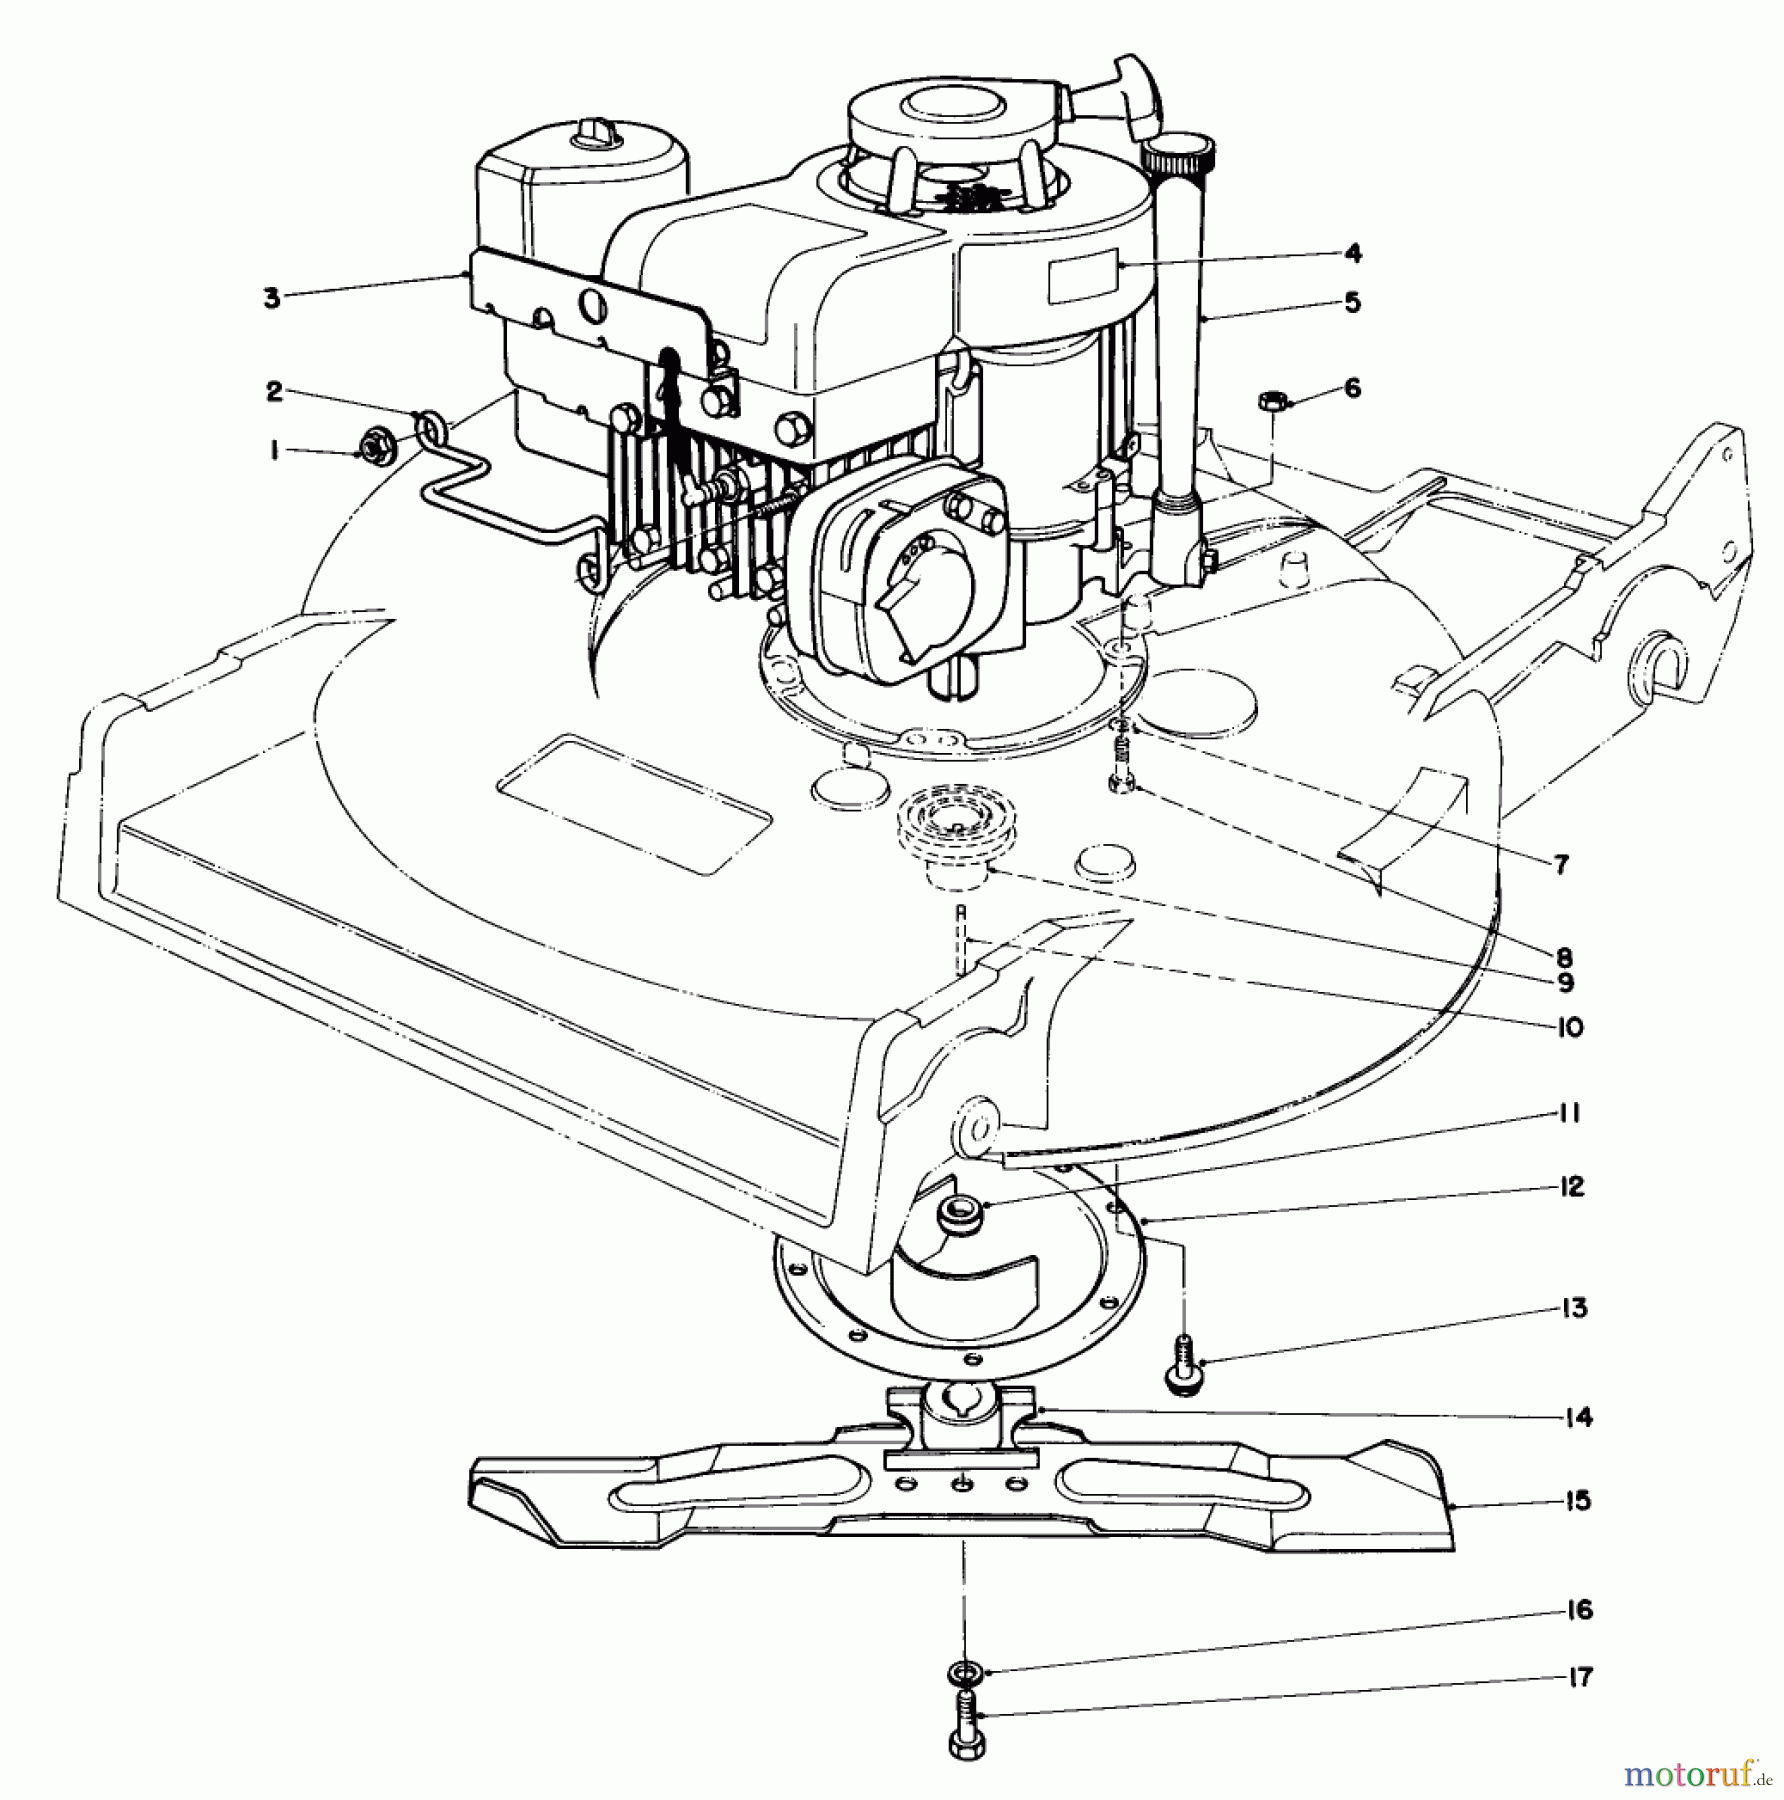  Toro Neu Mowers, Walk-Behind Seite 2 22020 - Toro Lawnmower, 1983 (3000001-3999999) ENGINE ASSEMBLY (MODELS 22015 & 22020)